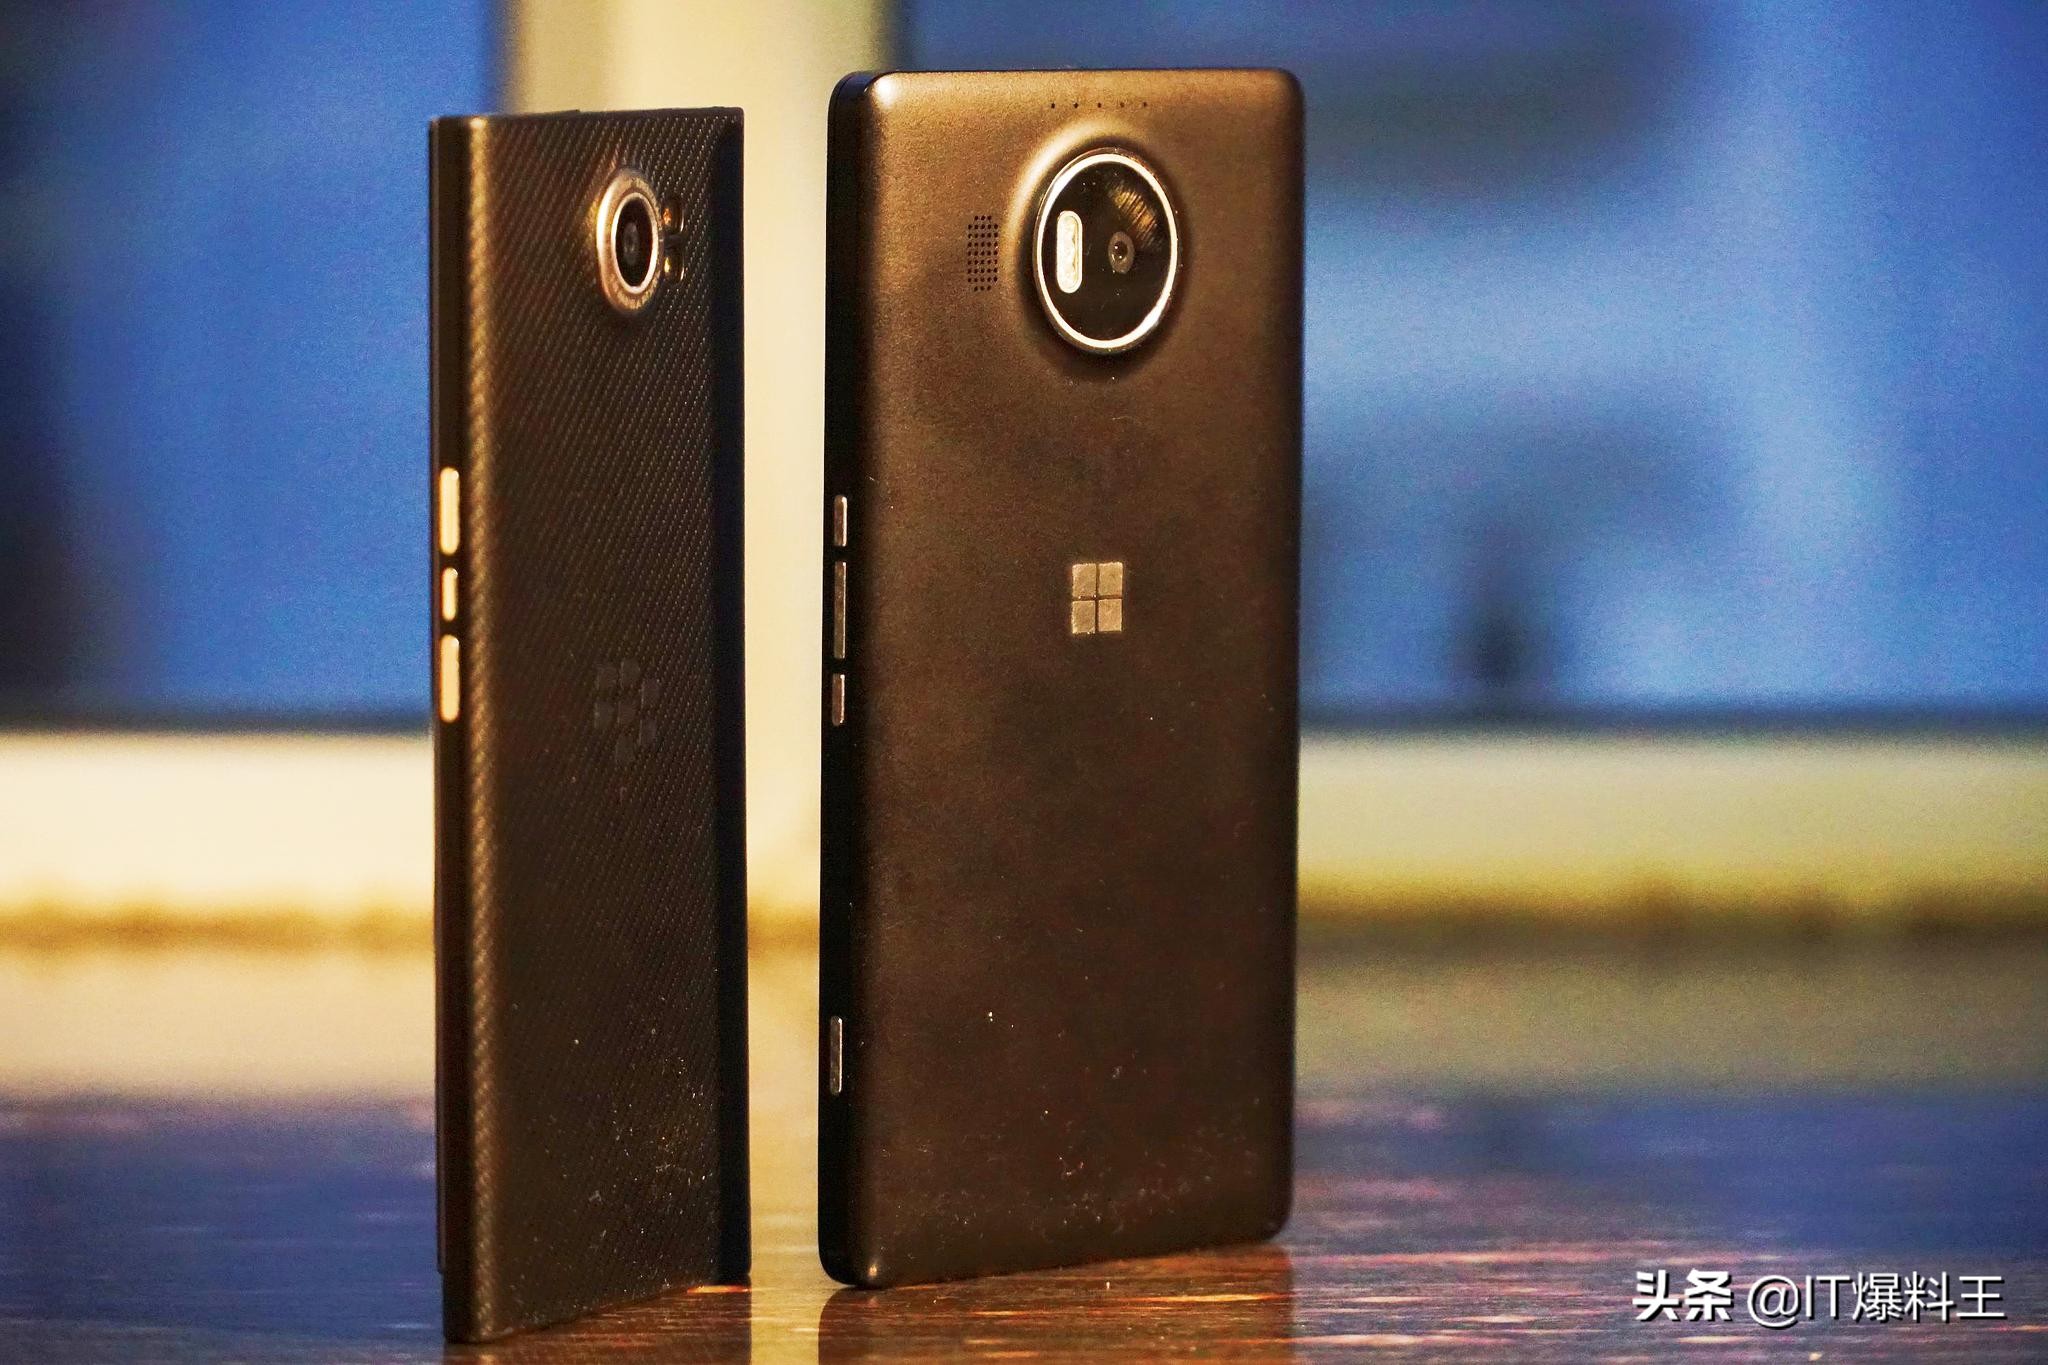 信念拆箱系列产品之照相霸者 Lumia 950XL：Nokia最后的倔强